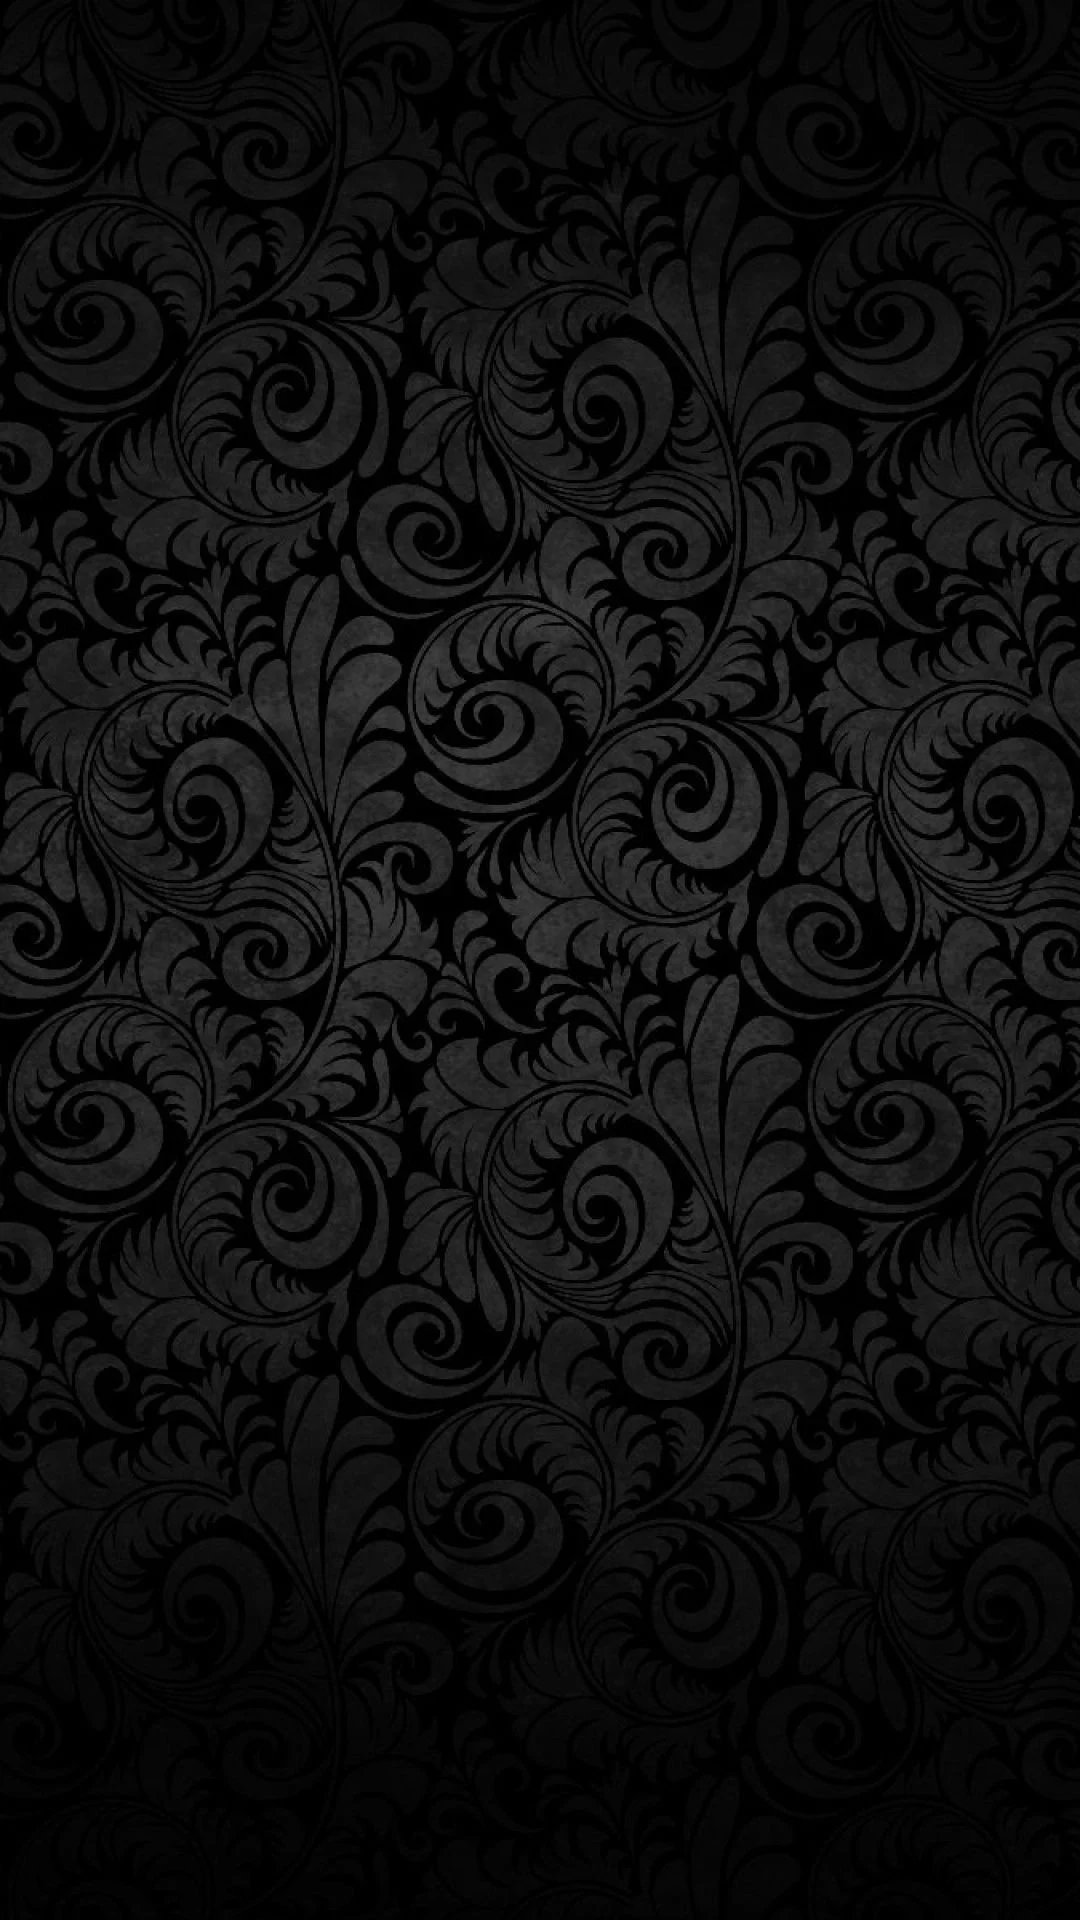 Hình nền Black Wallpaper đã trở thành một xu hướng đang được ưa chuộng trong cộng đồng. Với phong cách đầy mạnh mẽ và tinh tế, hình nền này sẽ giúp cho màn hình của bạn trở nên đẹp mắt và nổi bật.